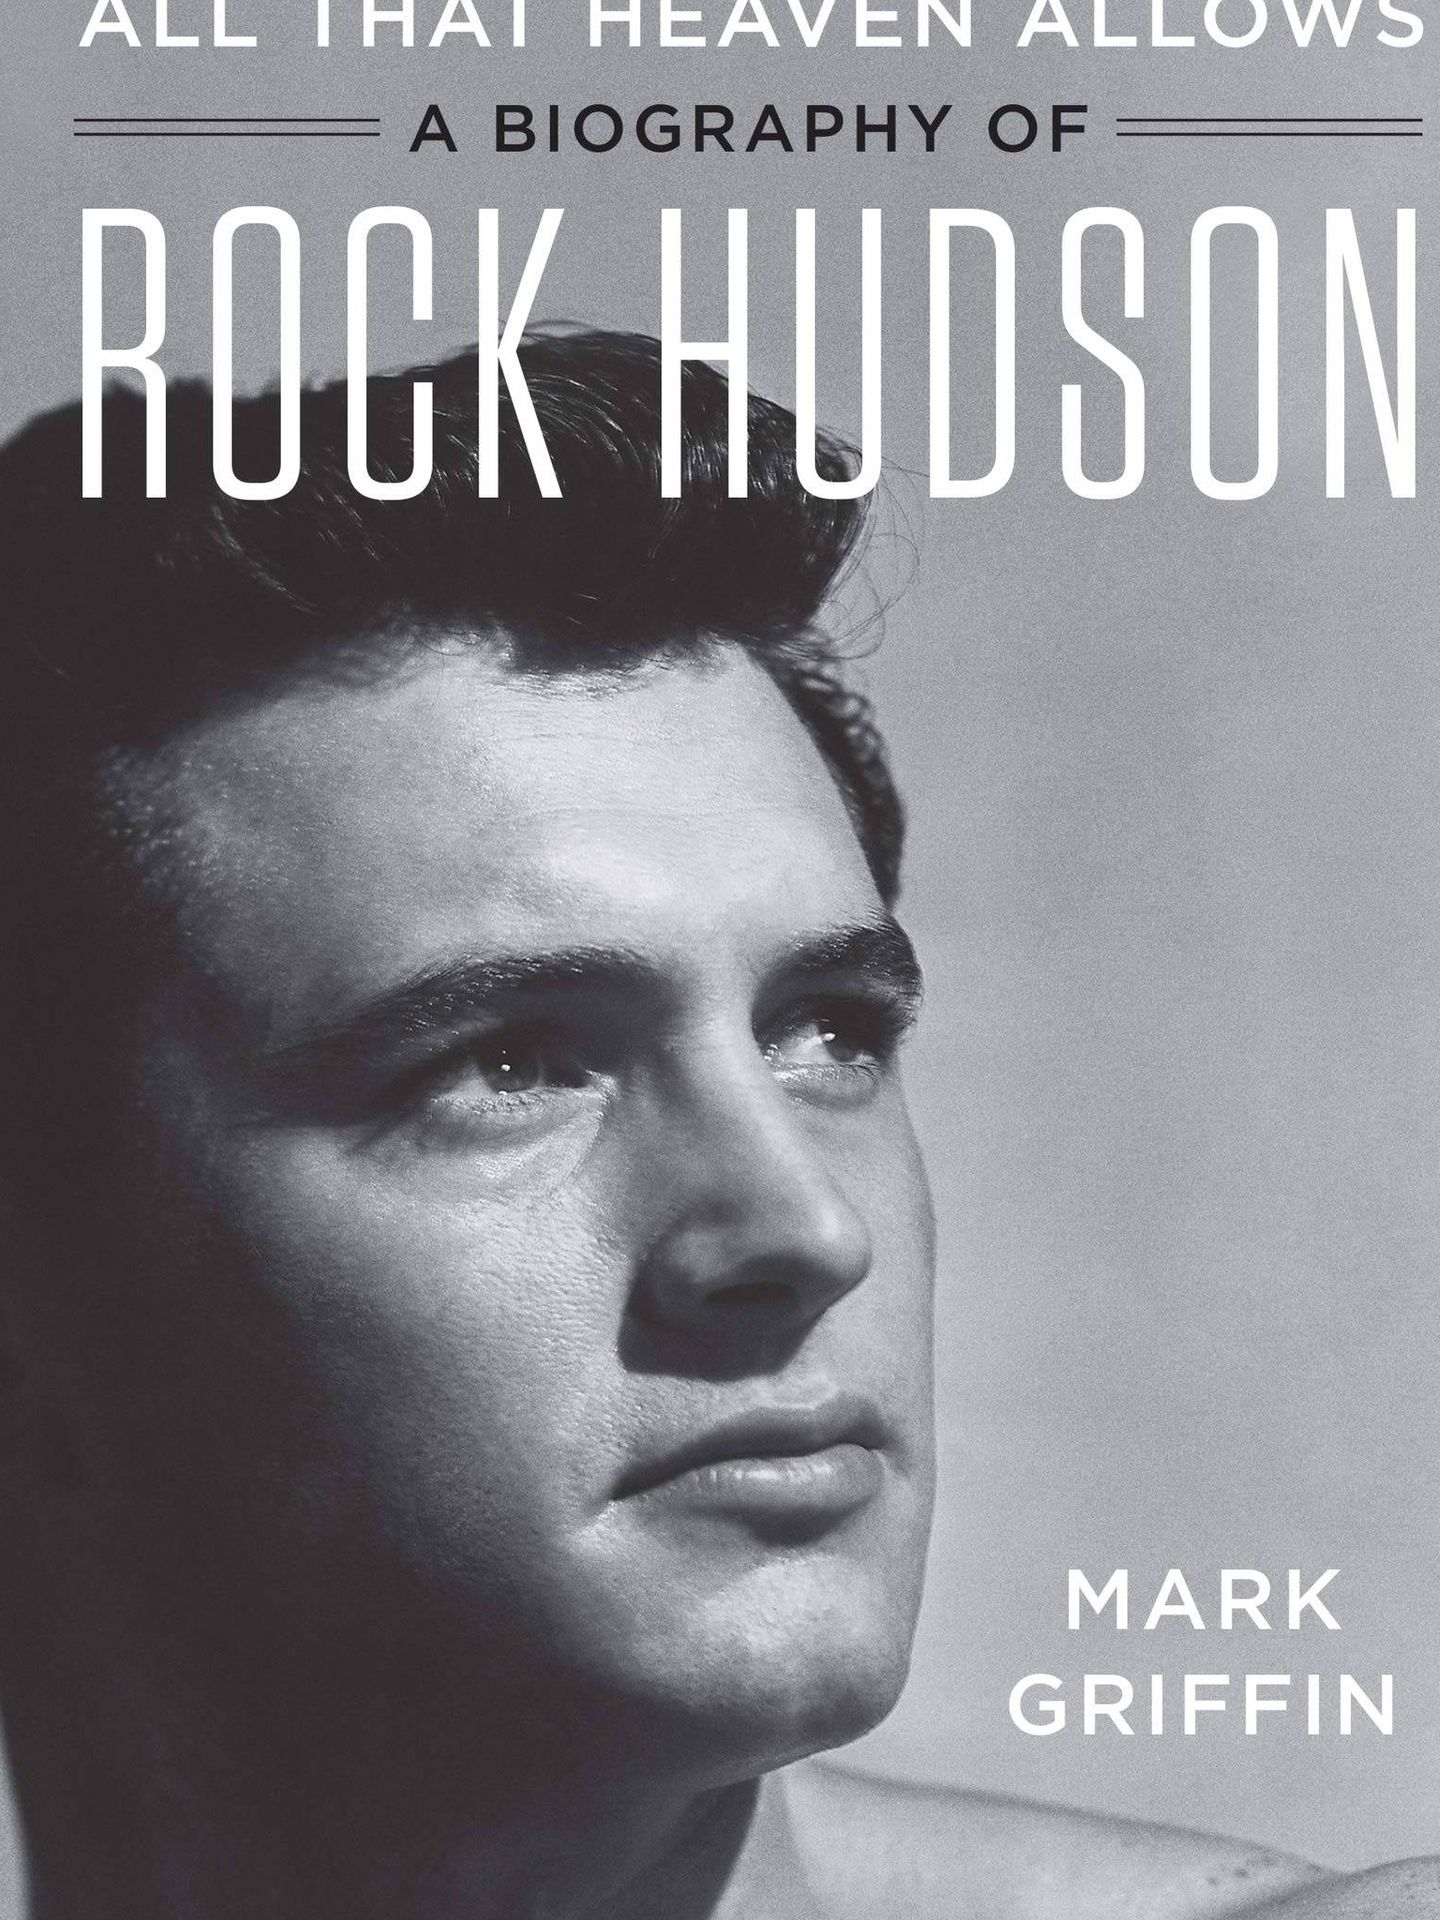 Portada de la nueva biografía de Rock Hudson.